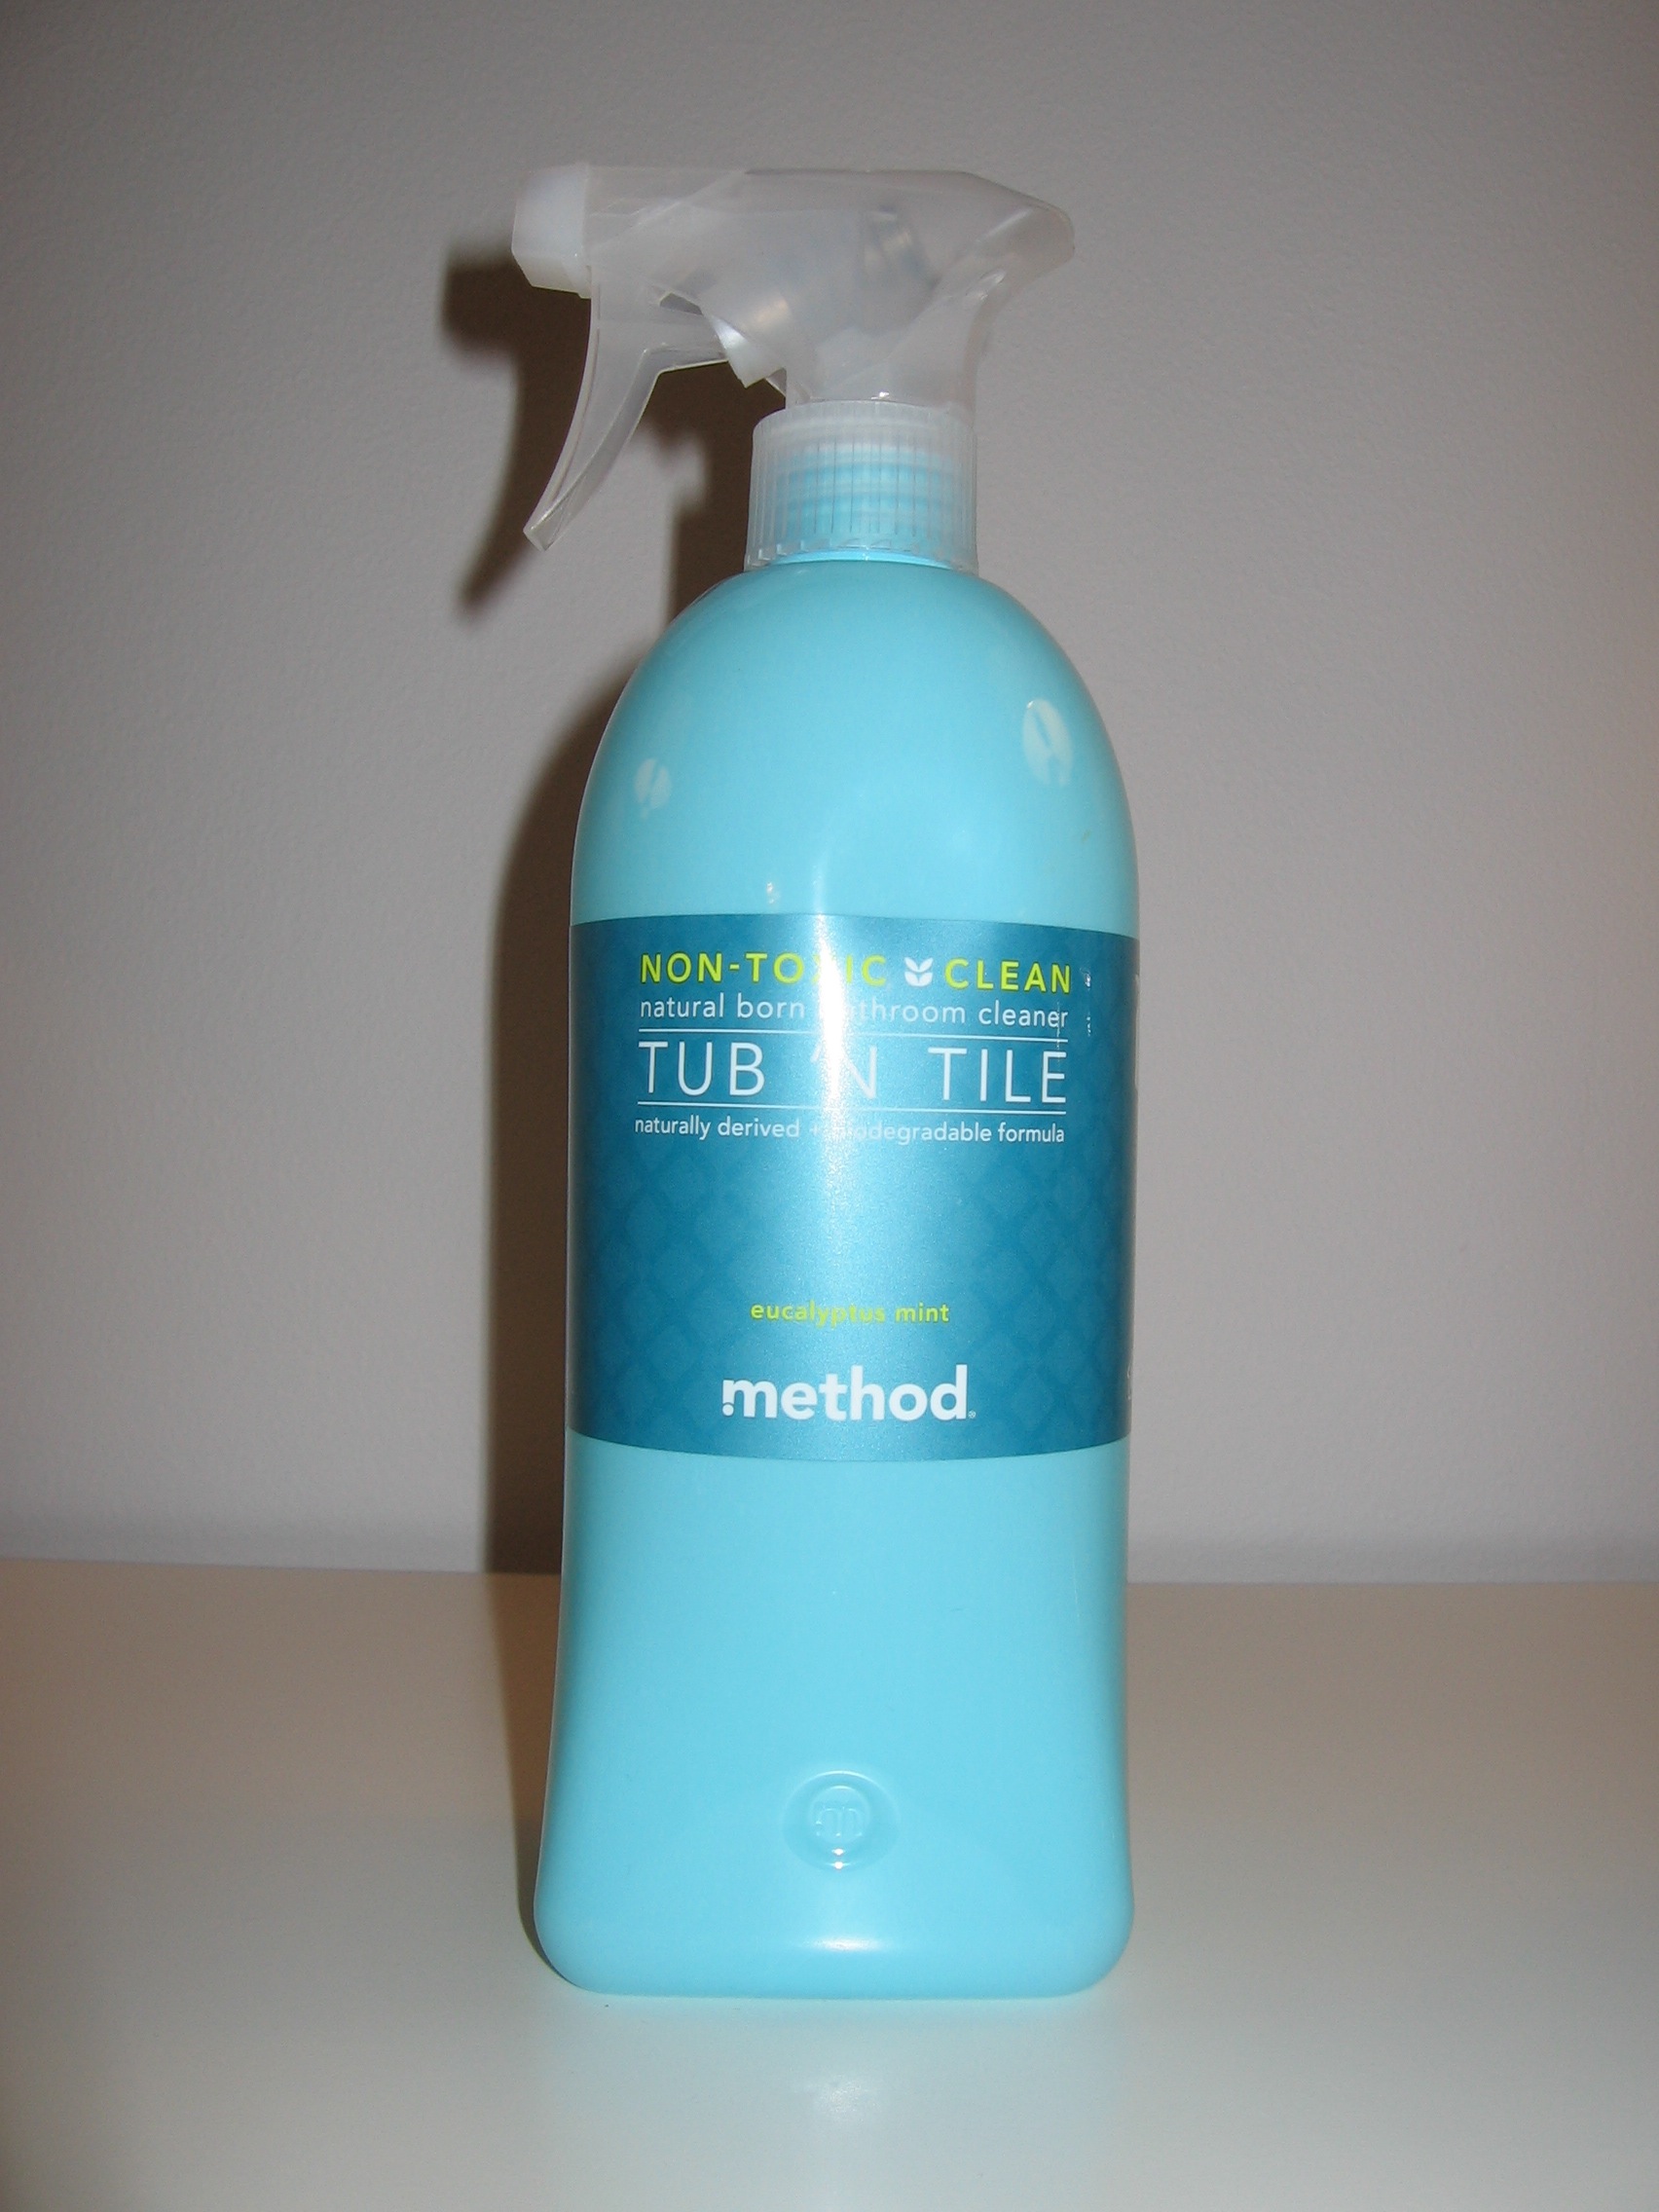 Method Tub´n Tile kylpyhuoneen puhdistusaine eucalyptus mint kokemuksia Omakotivalkoinen